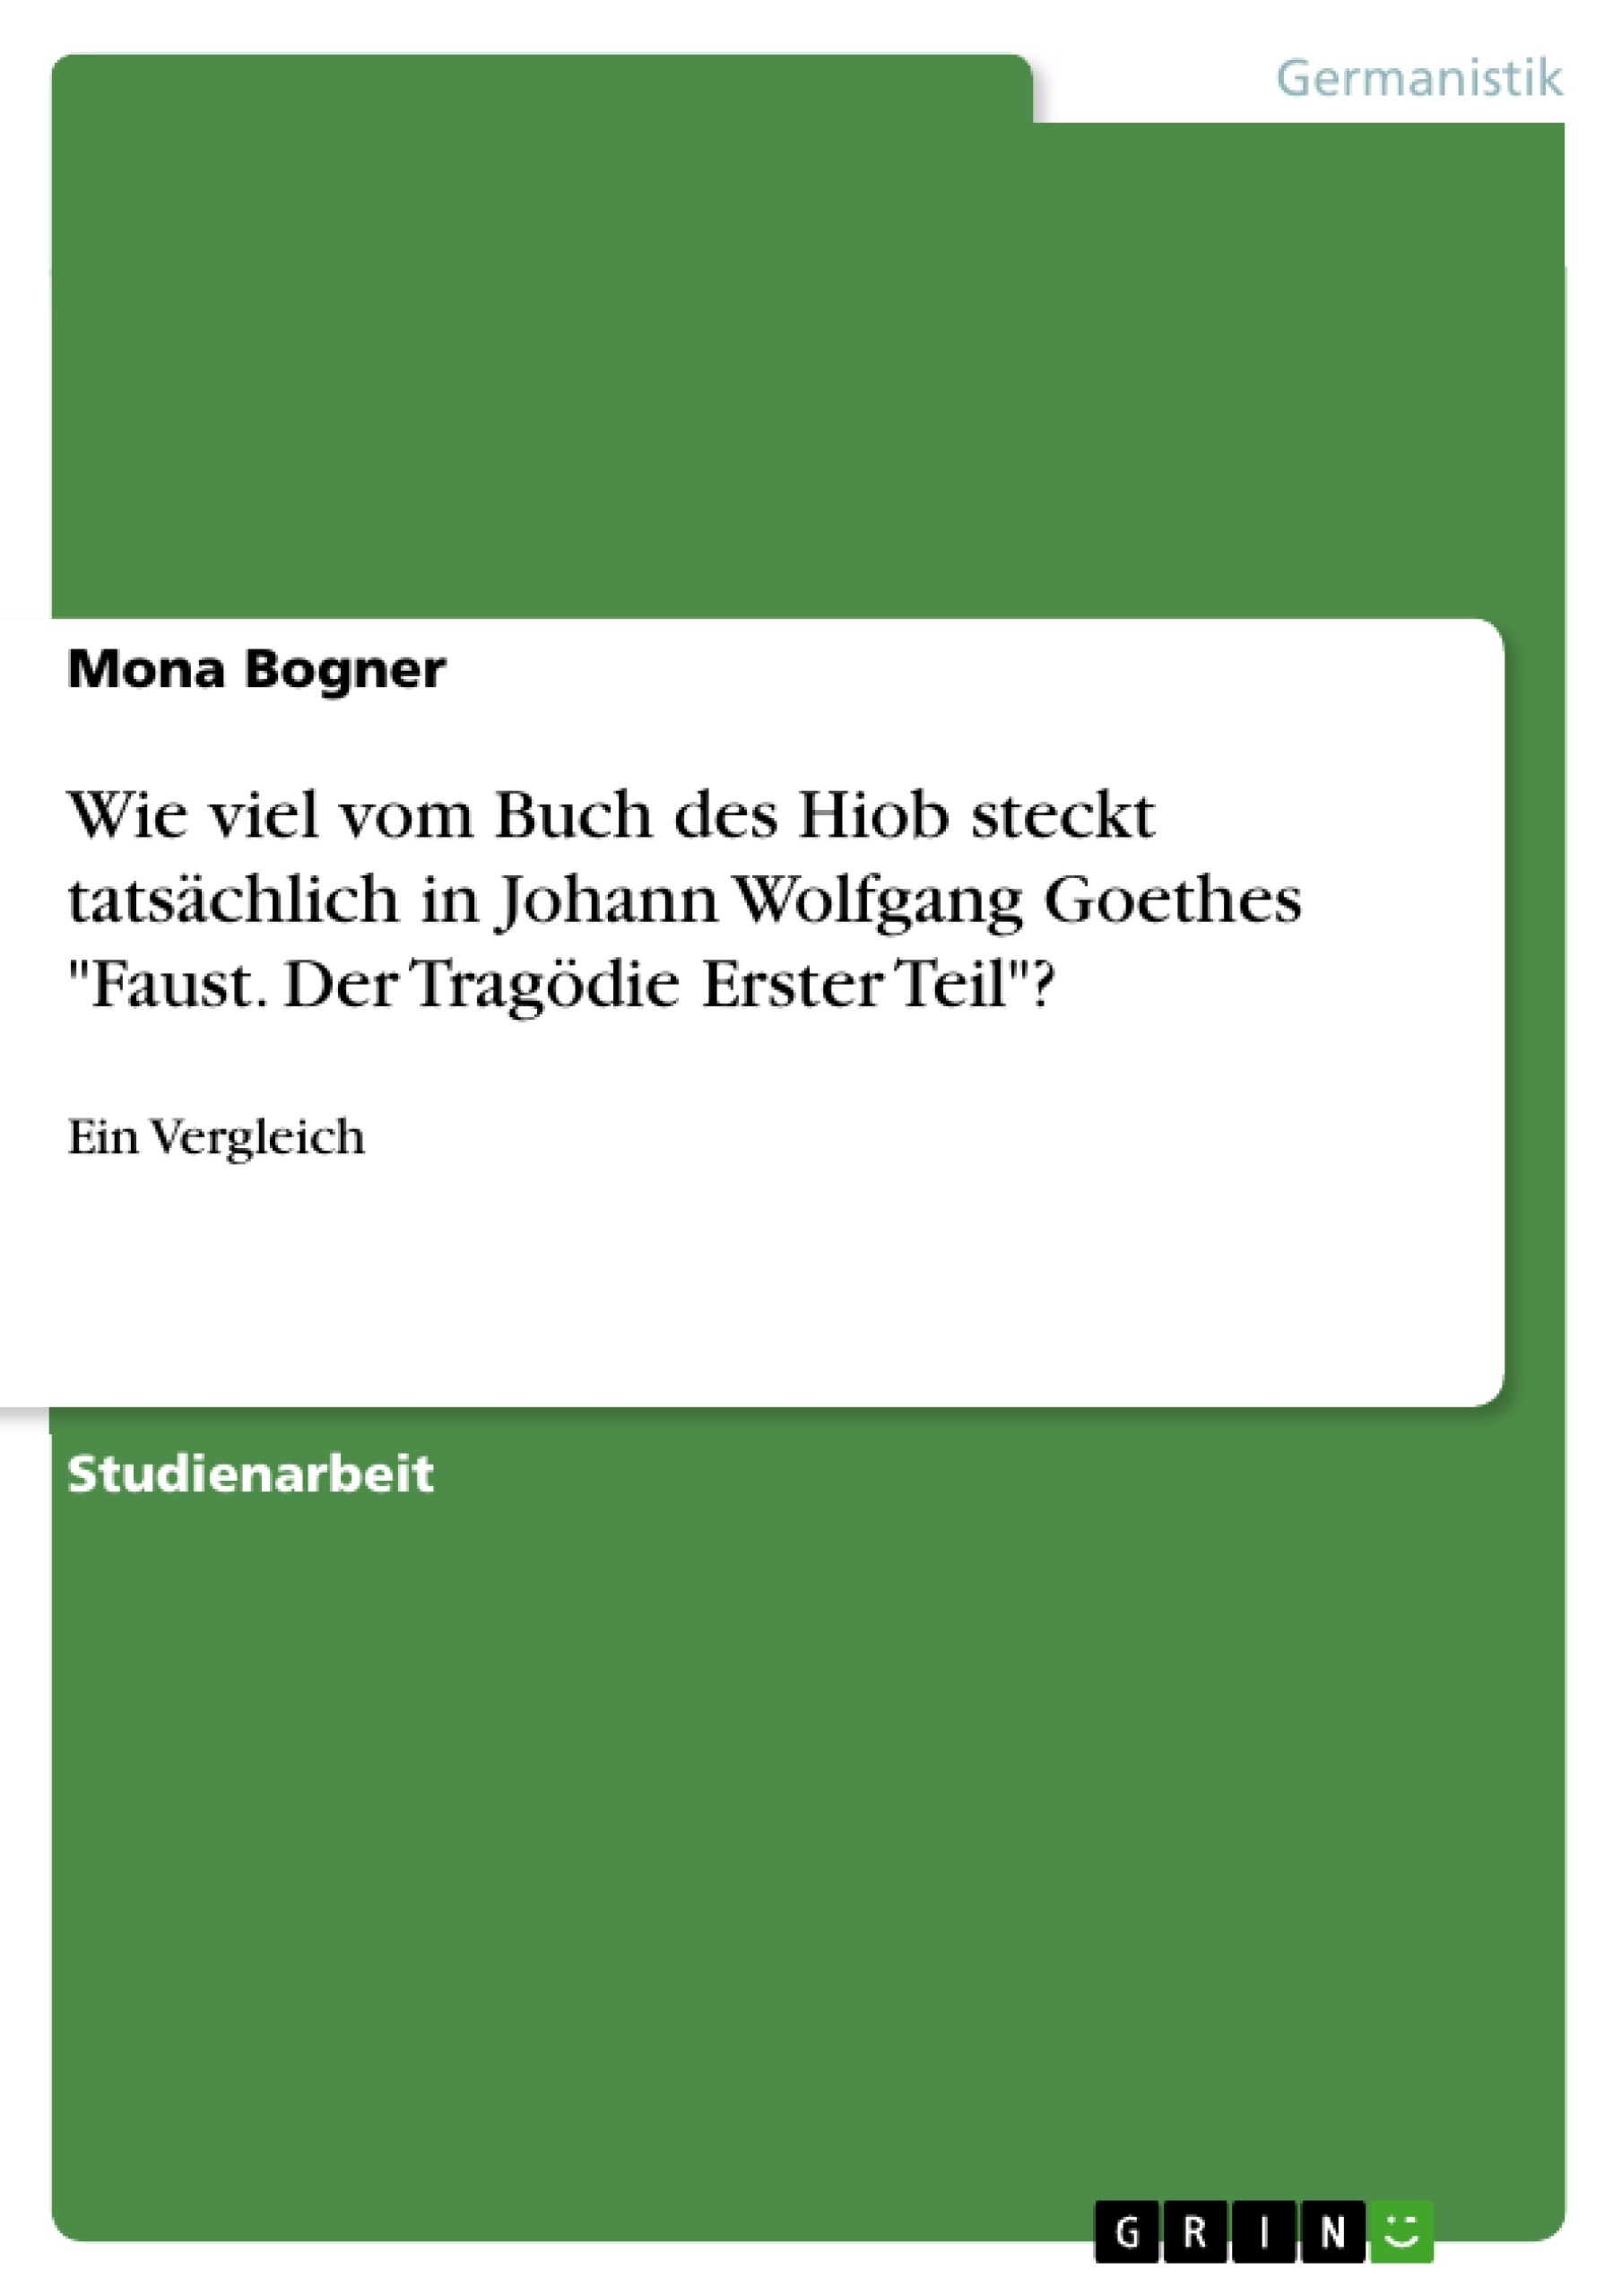 Titre: Wie viel vom Buch des Hiob steckt tatsächlich in Johann Wolfgang Goethes "Faust. Der Tragödie Erster Teil"?